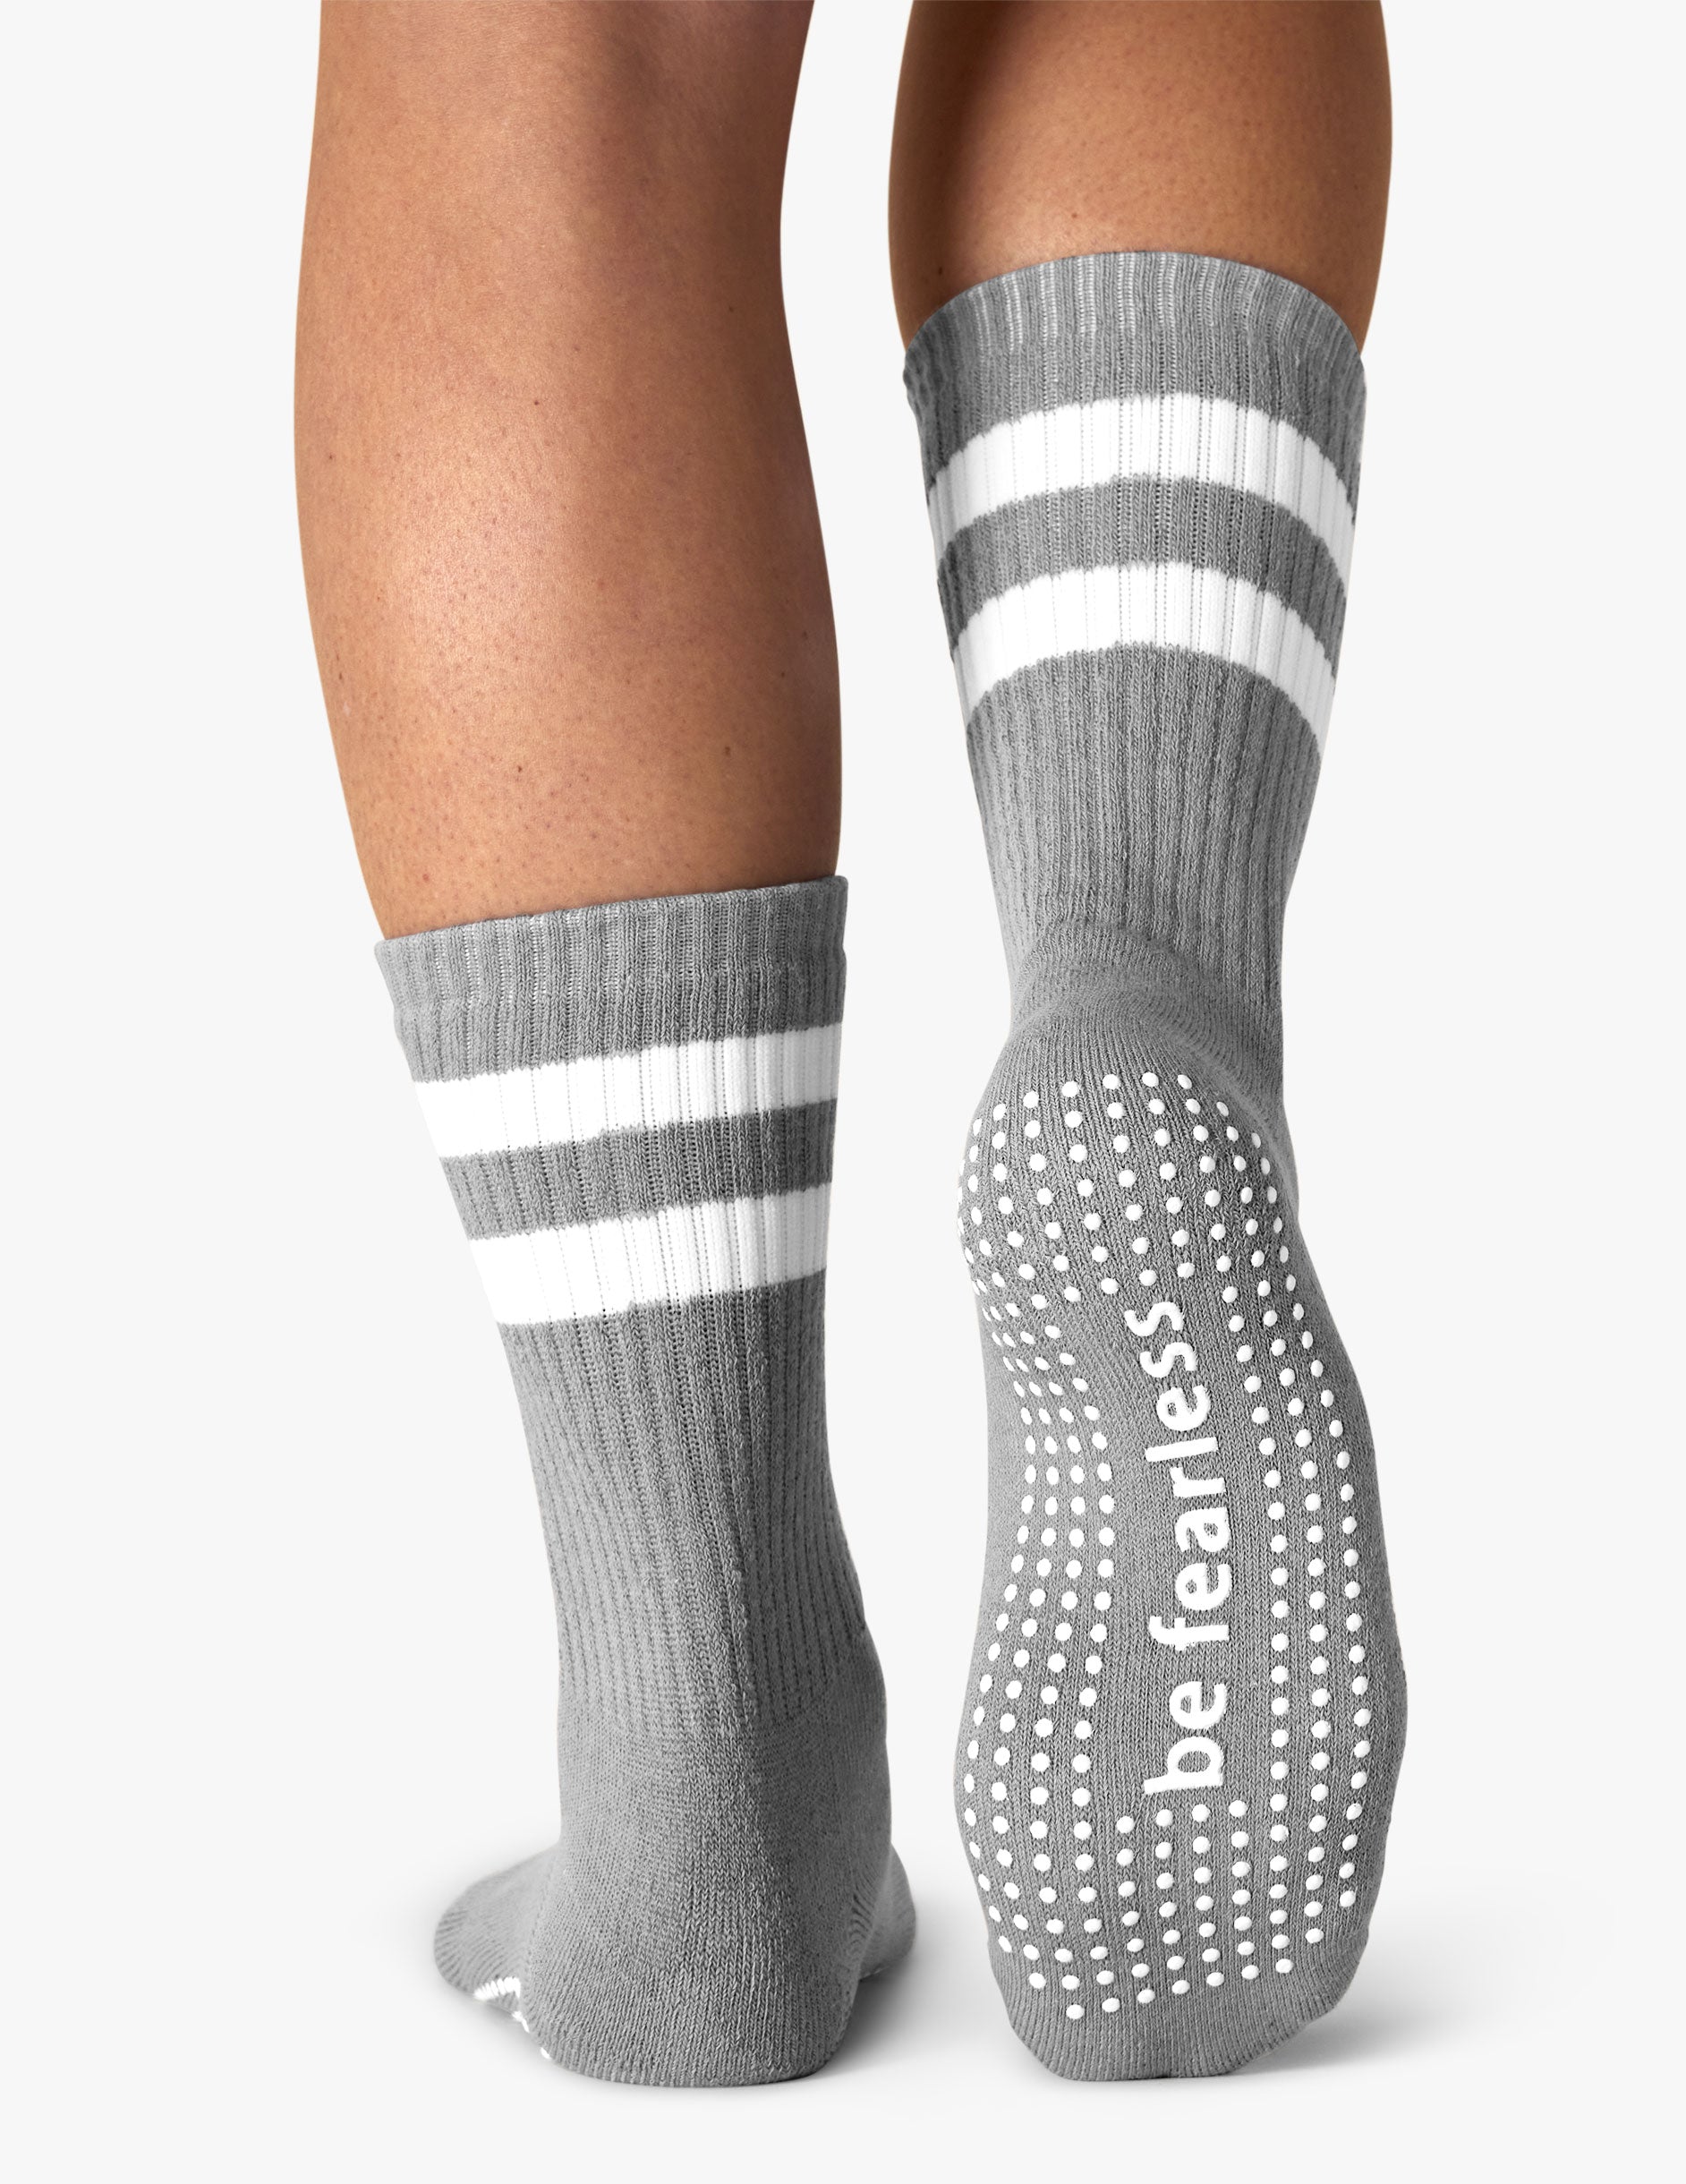 Skymountain Women Socks Elastic Band Shrink Prevent Grips Women Barre Socks